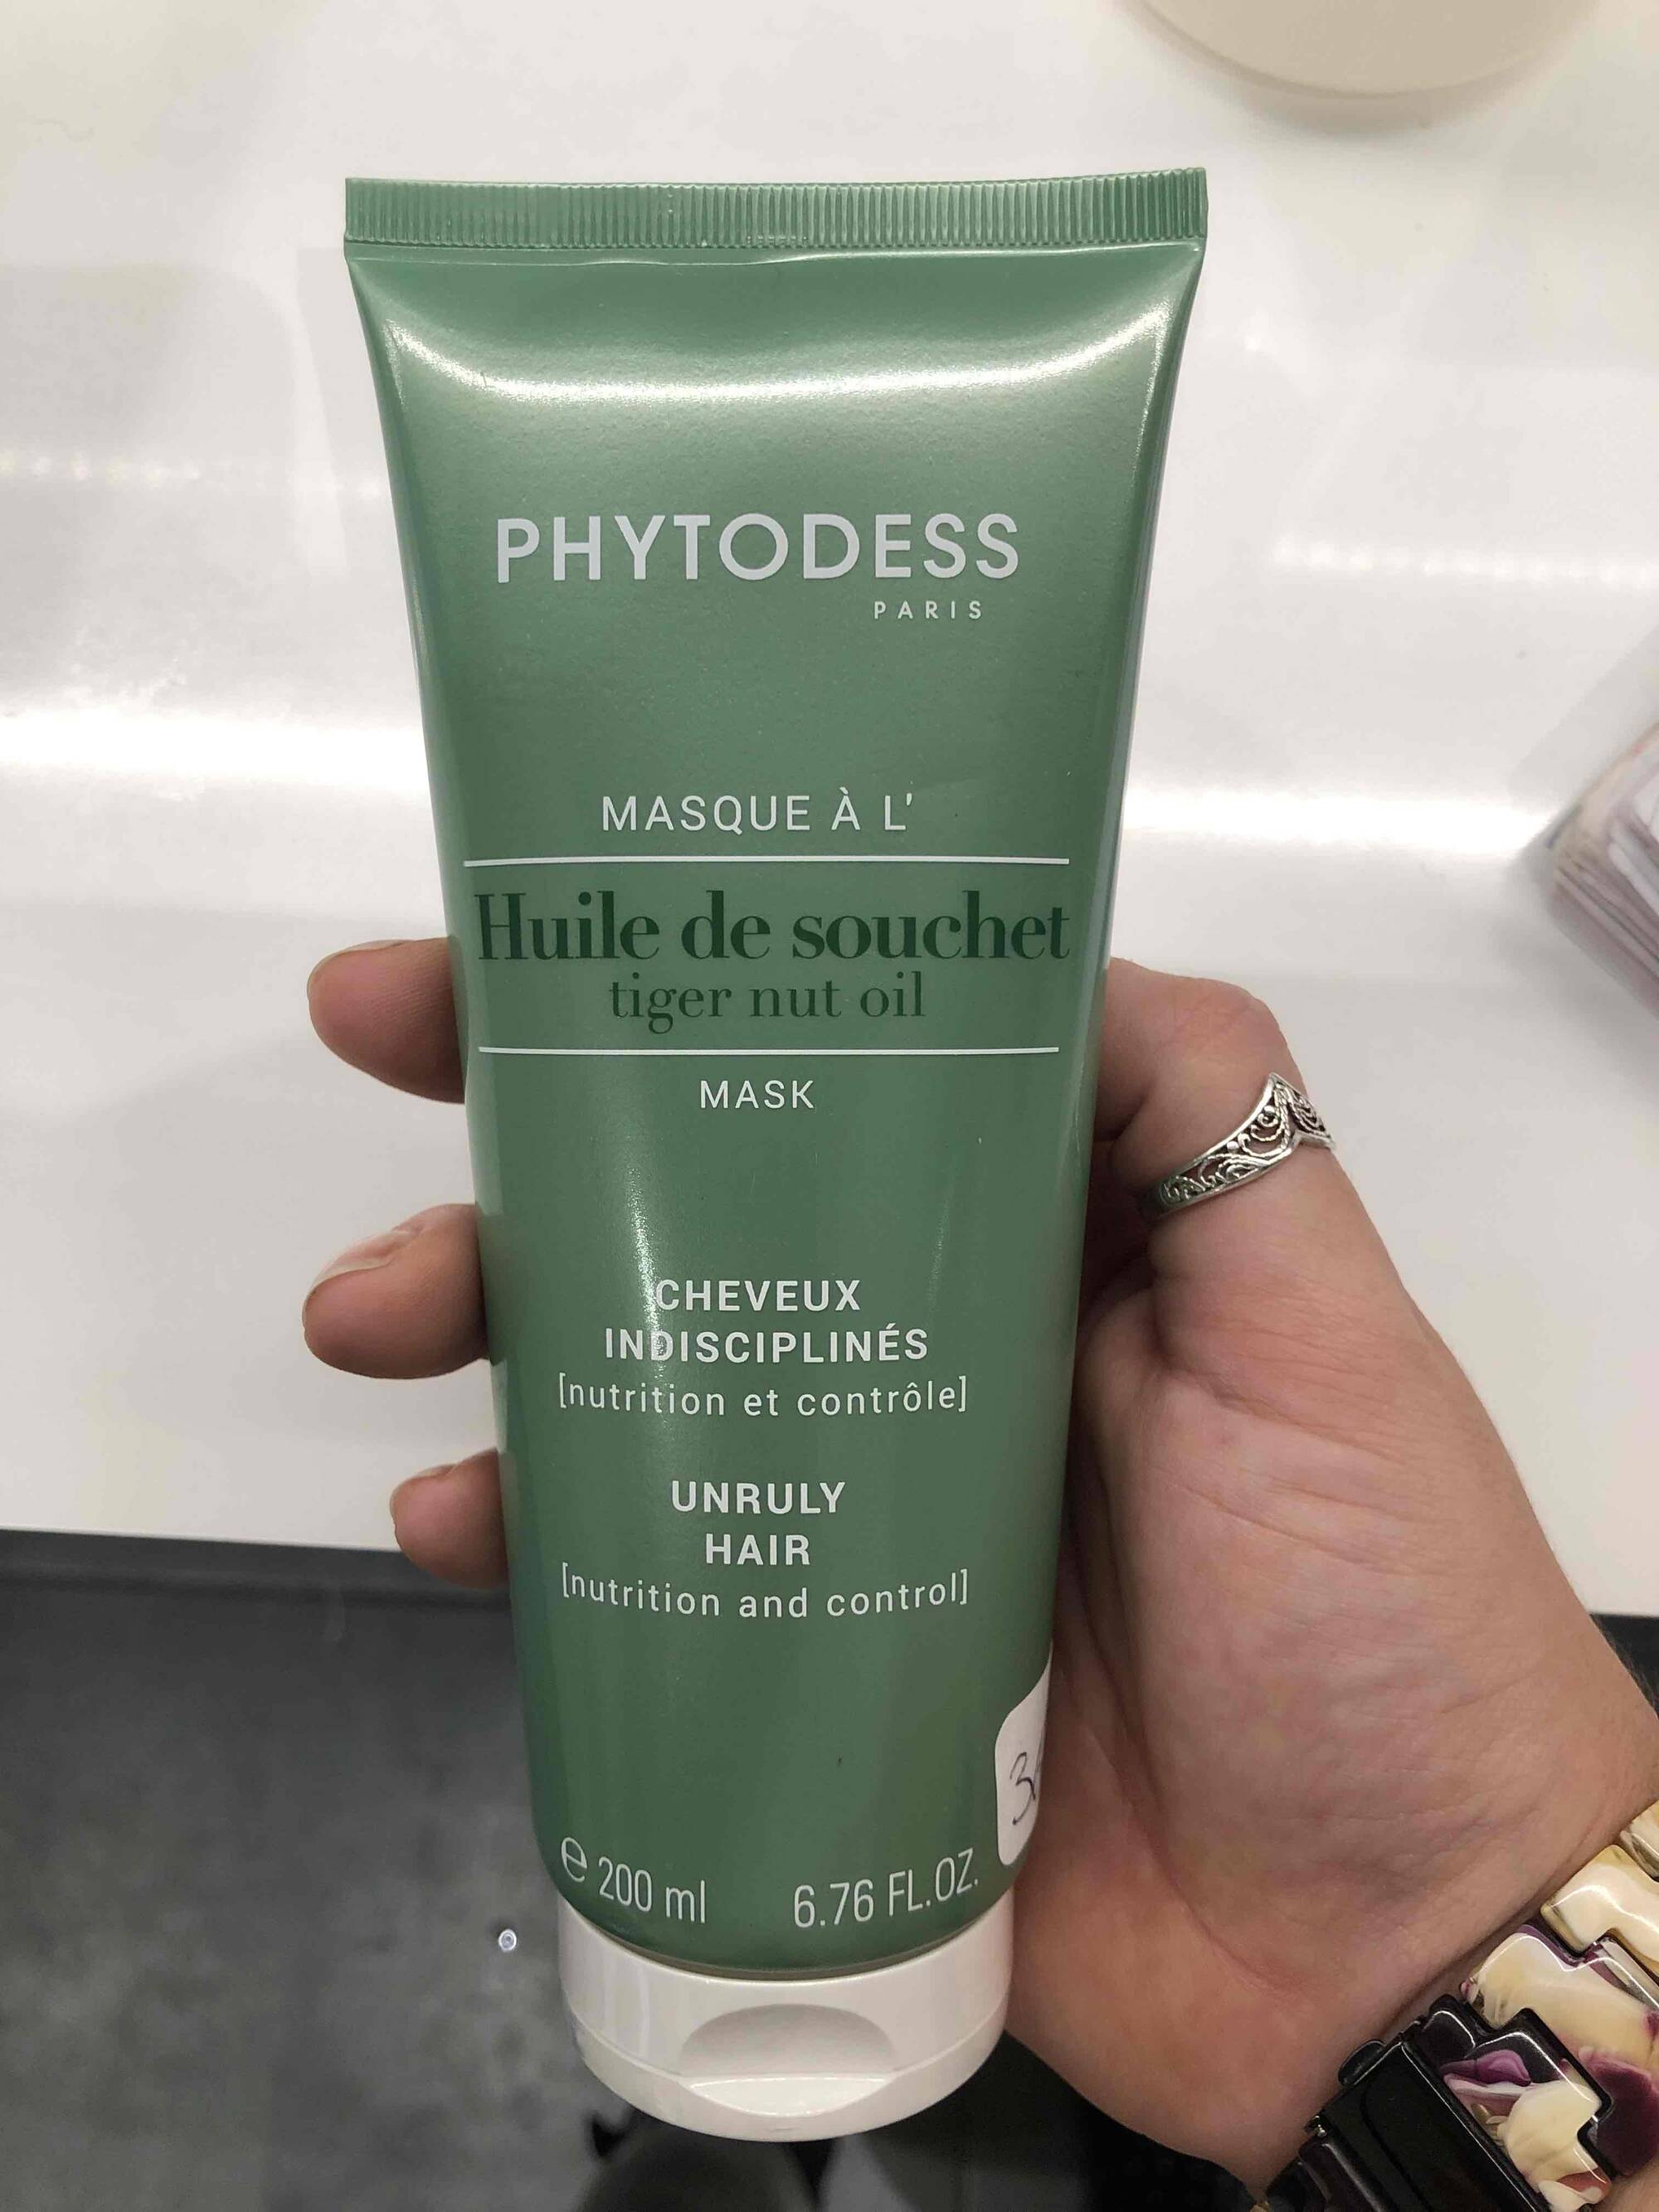 PHYTODESS - Masque a l’huile de souchet - Cheveux indisciplinés